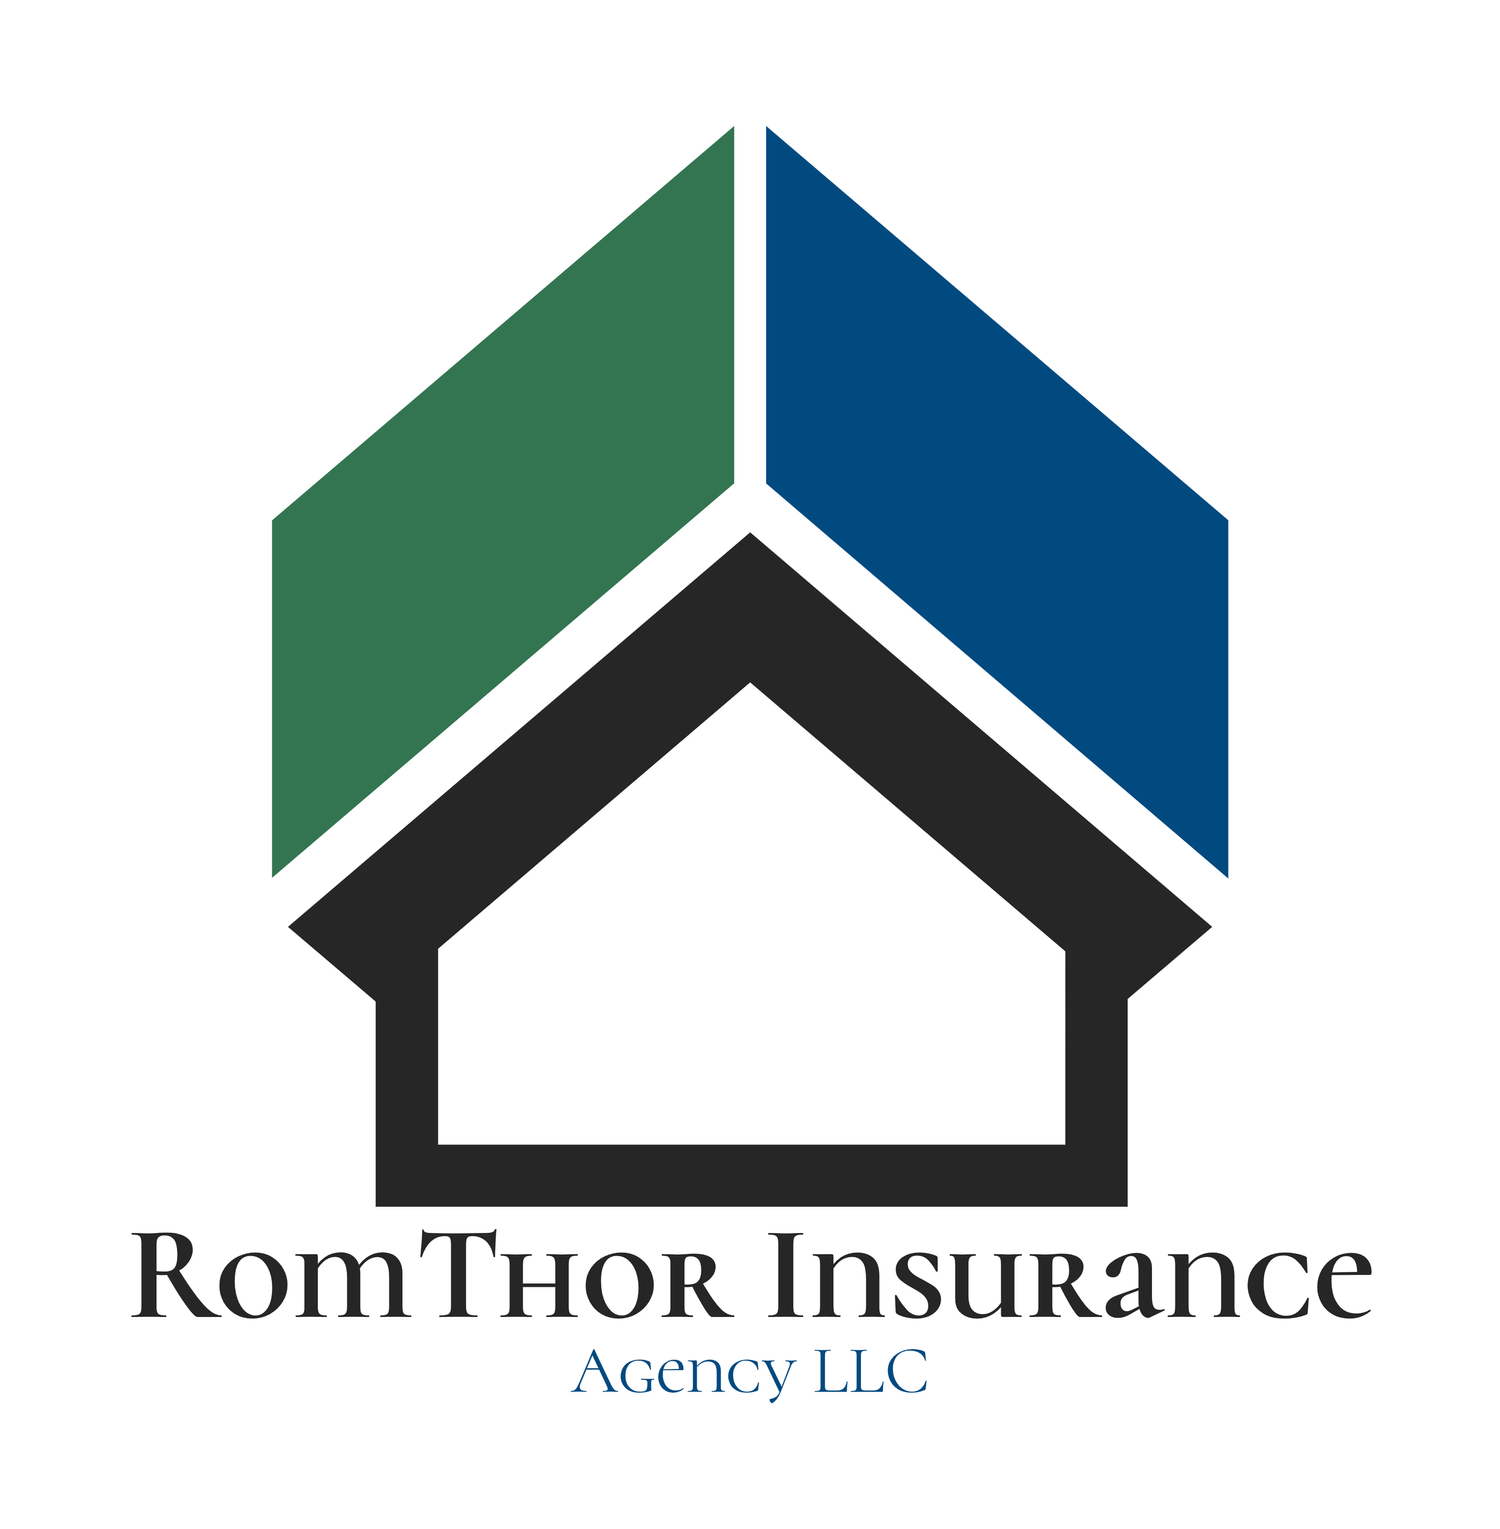 RomThor Insurance Agency LLC